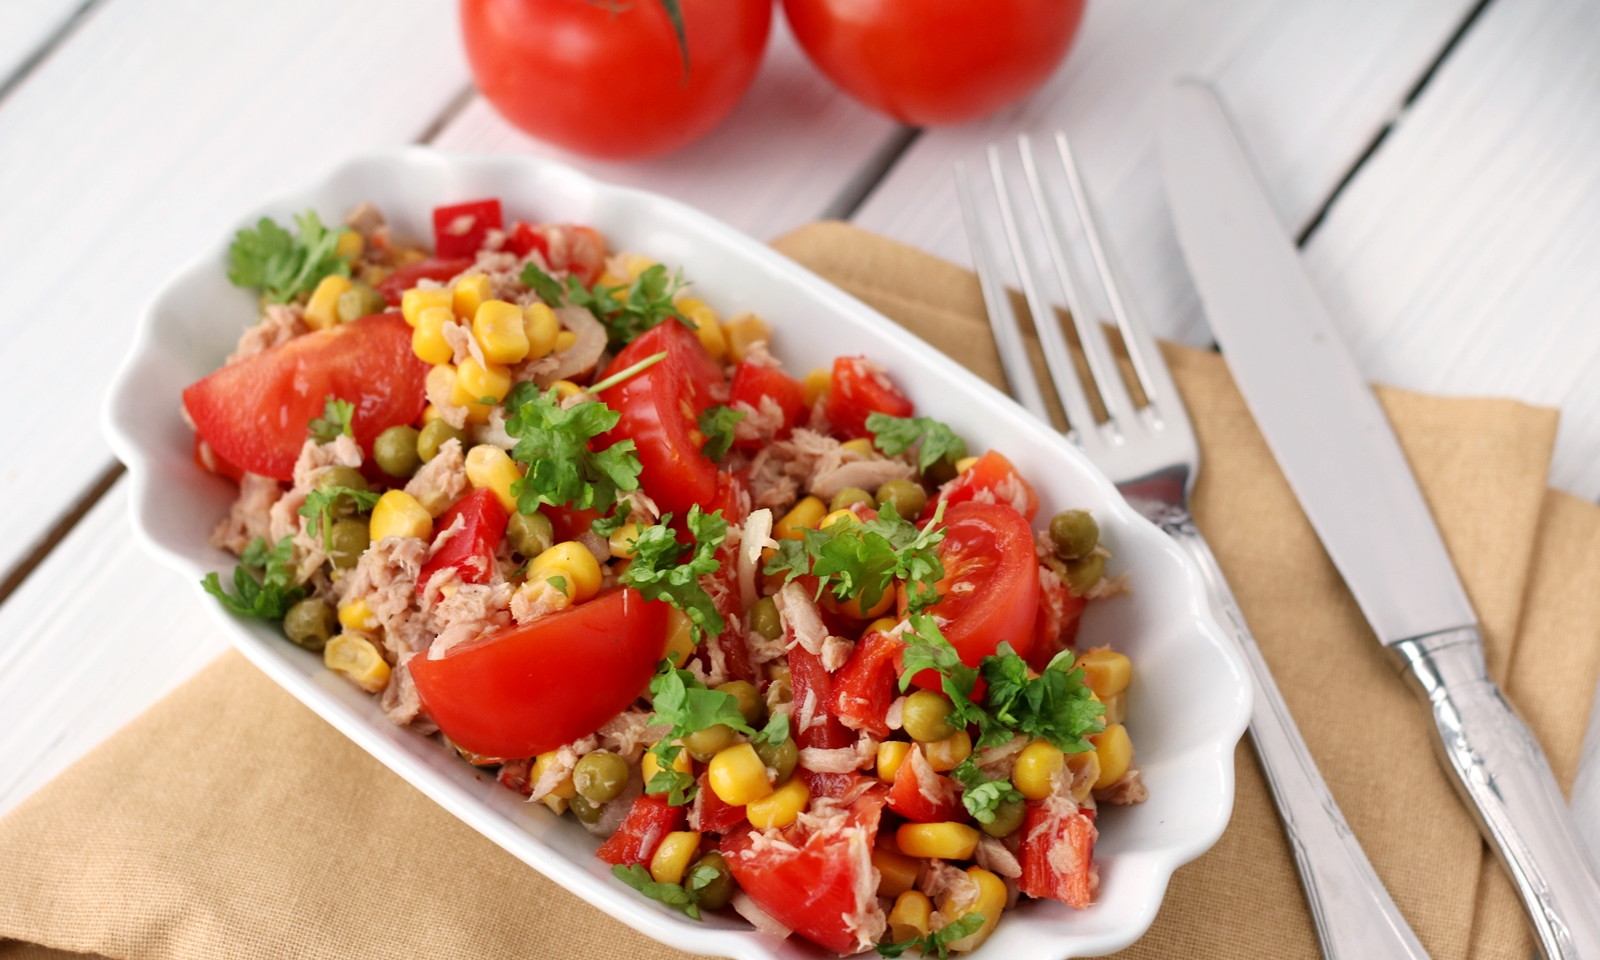 Thunfisch Tomaten Salat — Rezepte Suchen